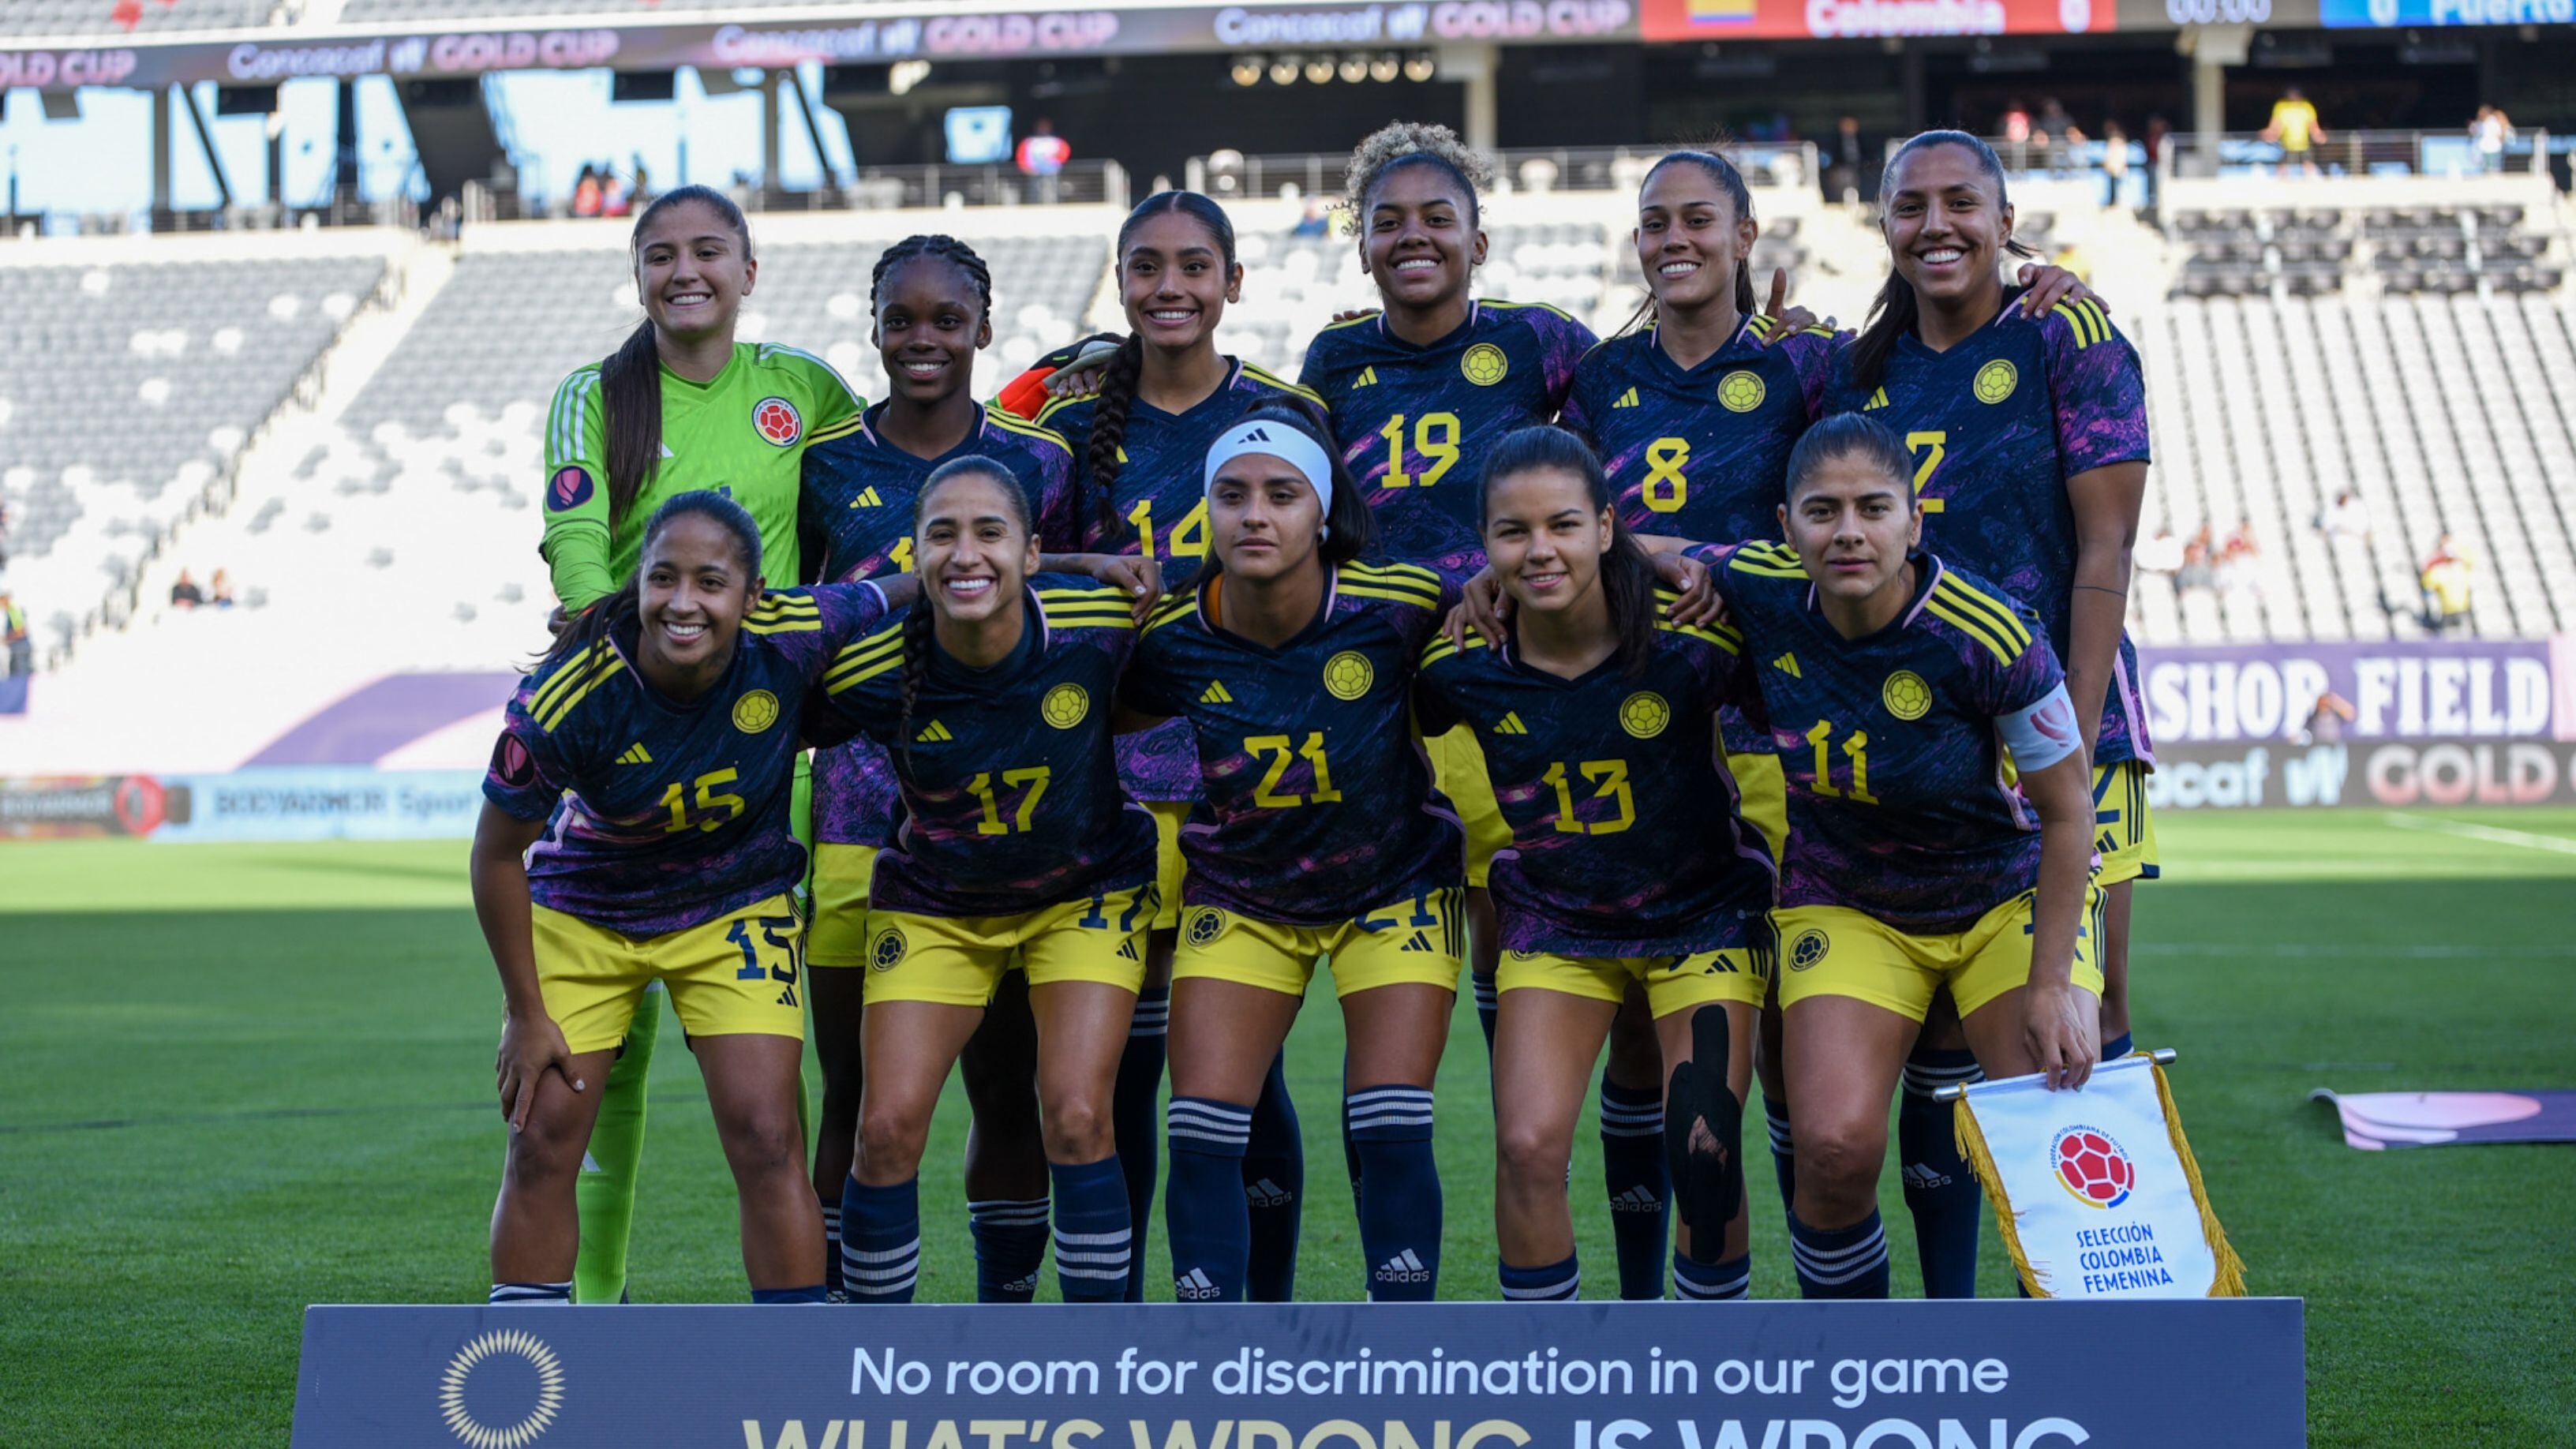 La selección Colombia Femenina es una de las favoritas para el título en la Copa Oro Femenina - crédito Federación Colombiana de Fútbol